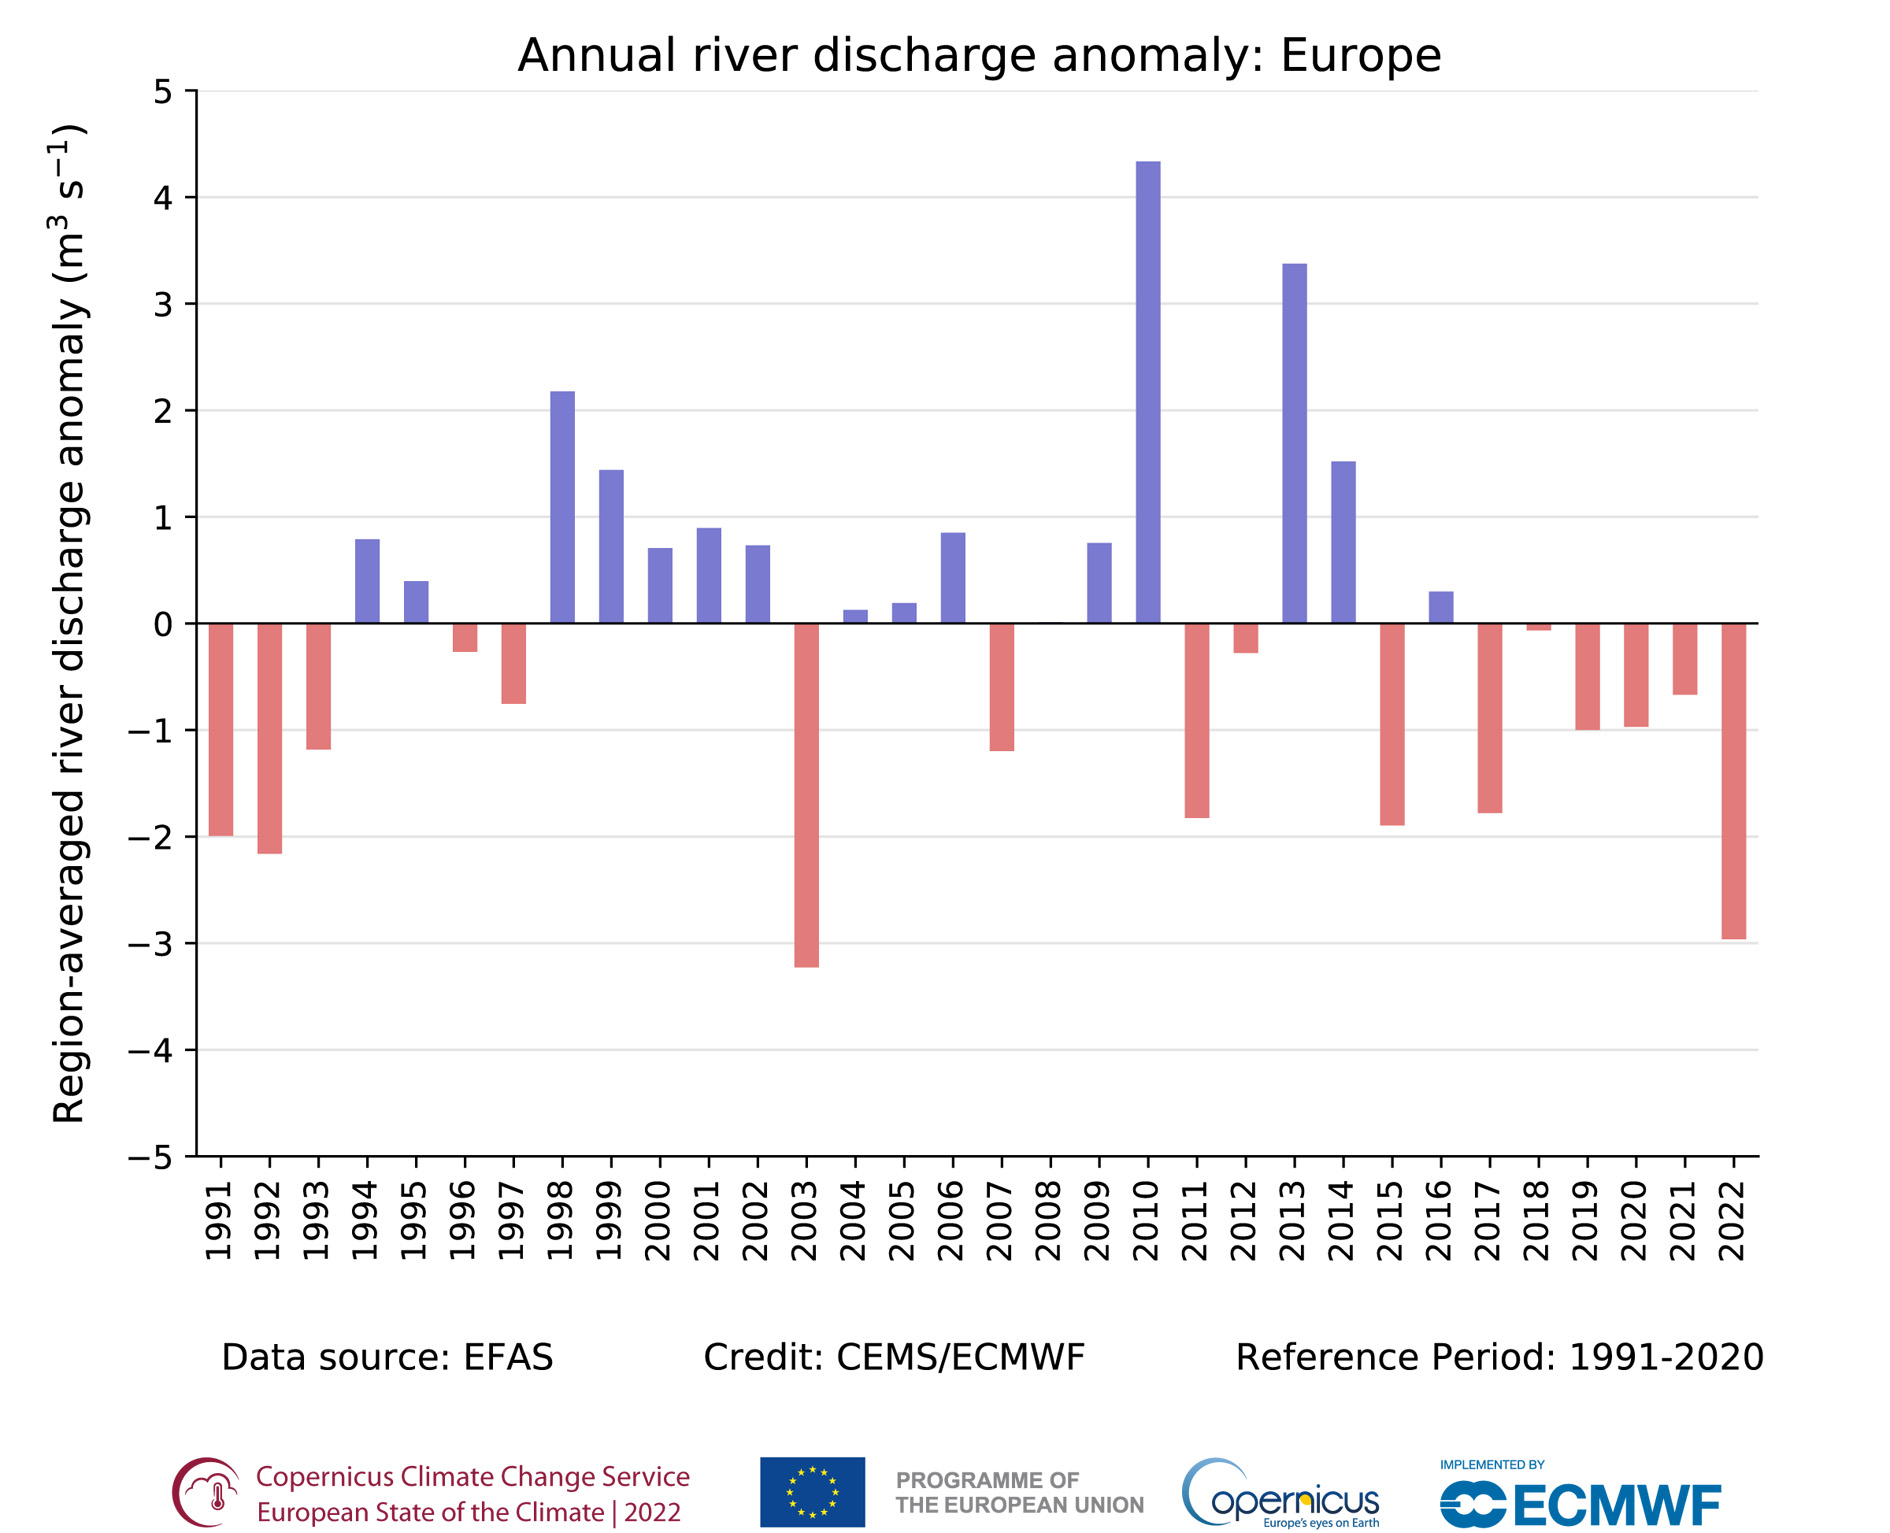 Roczne anomalie przepływu rzek w Europie w latach 1991-2022 w odniesieniu do średniej z wielolecia 1991-2020.